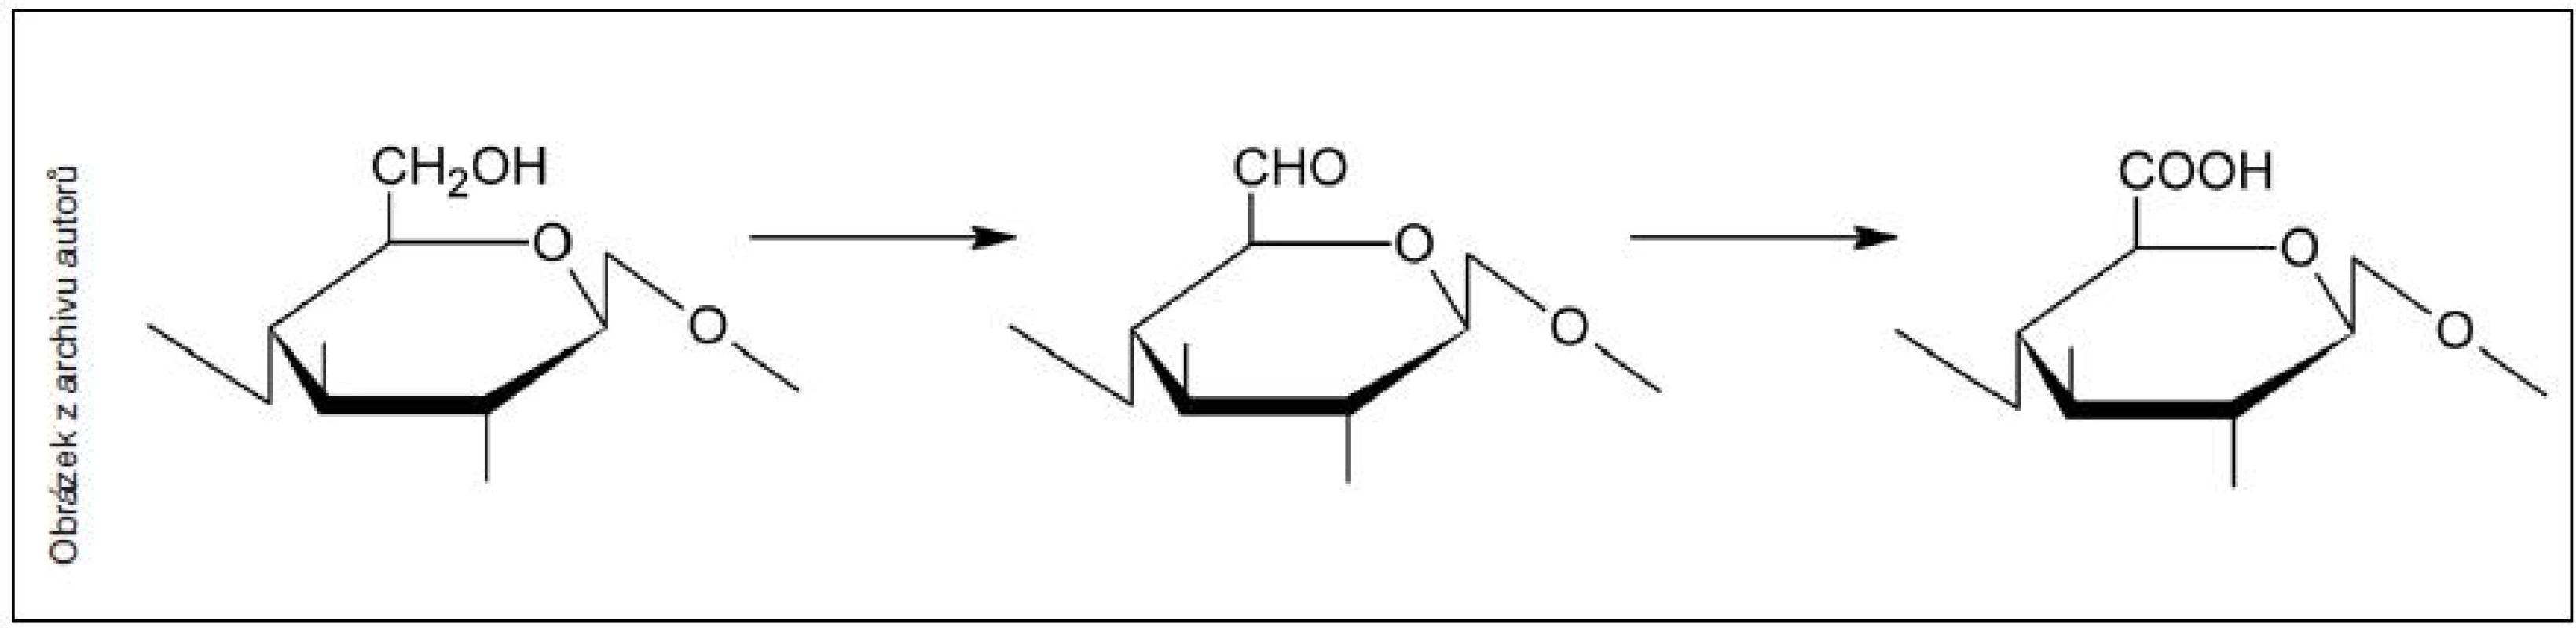 Oxidace celulózy – zjednodušené schéma oxidace glukopyranózové jednotky celulózy (předpokládající selektivní oxidaci C6 uhlíku)